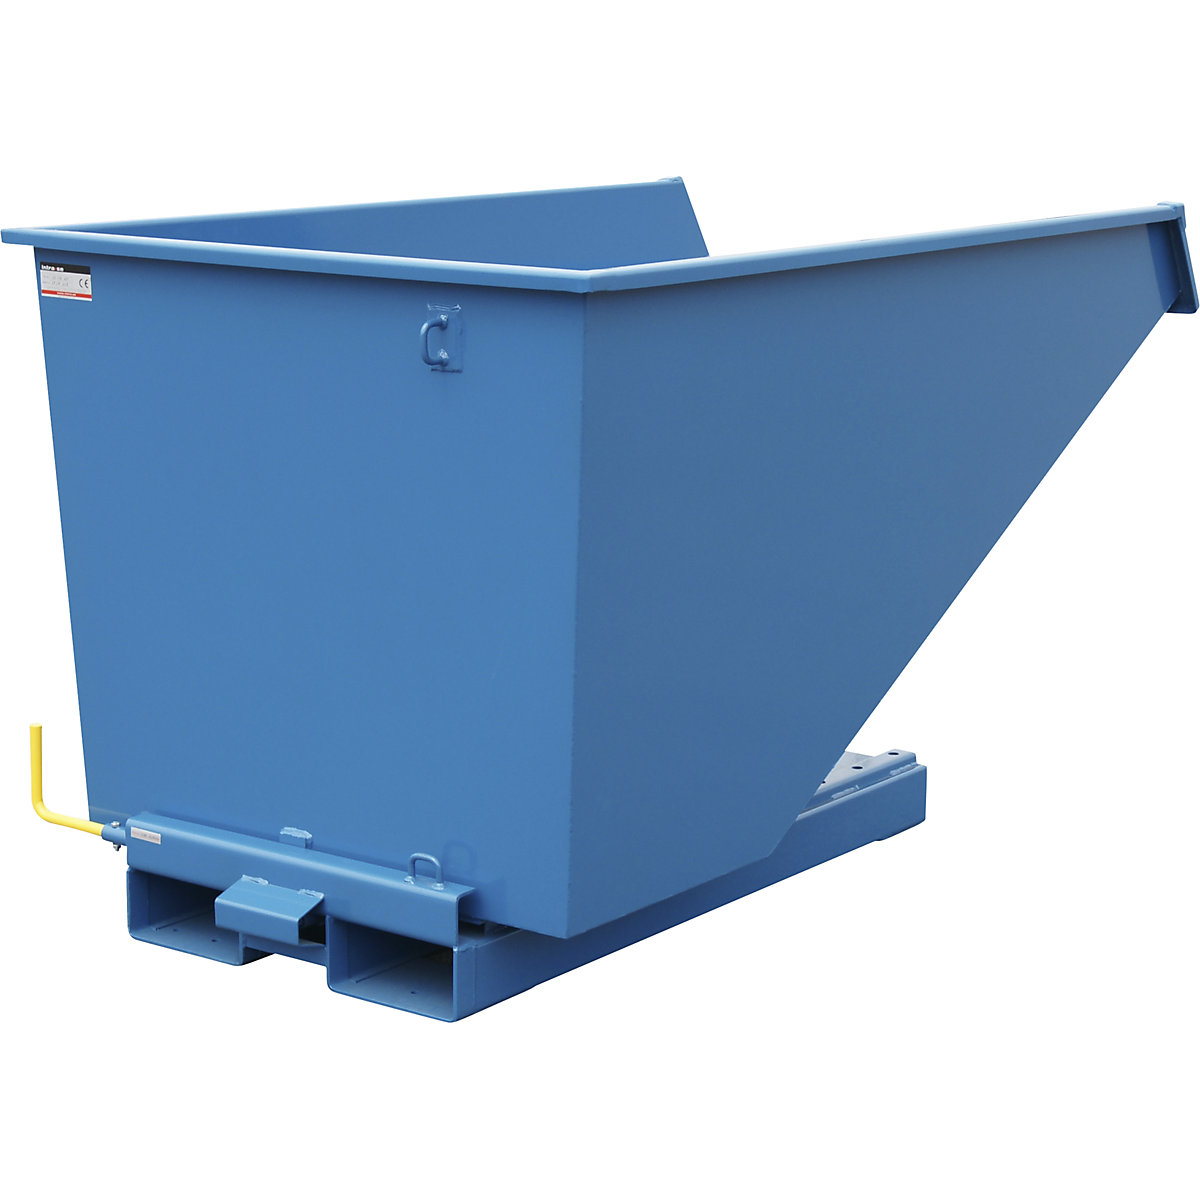 Zwaarlast-kiepbak, draagvermogen 2500 kg, blauw, inhoud 1,1 m³-2